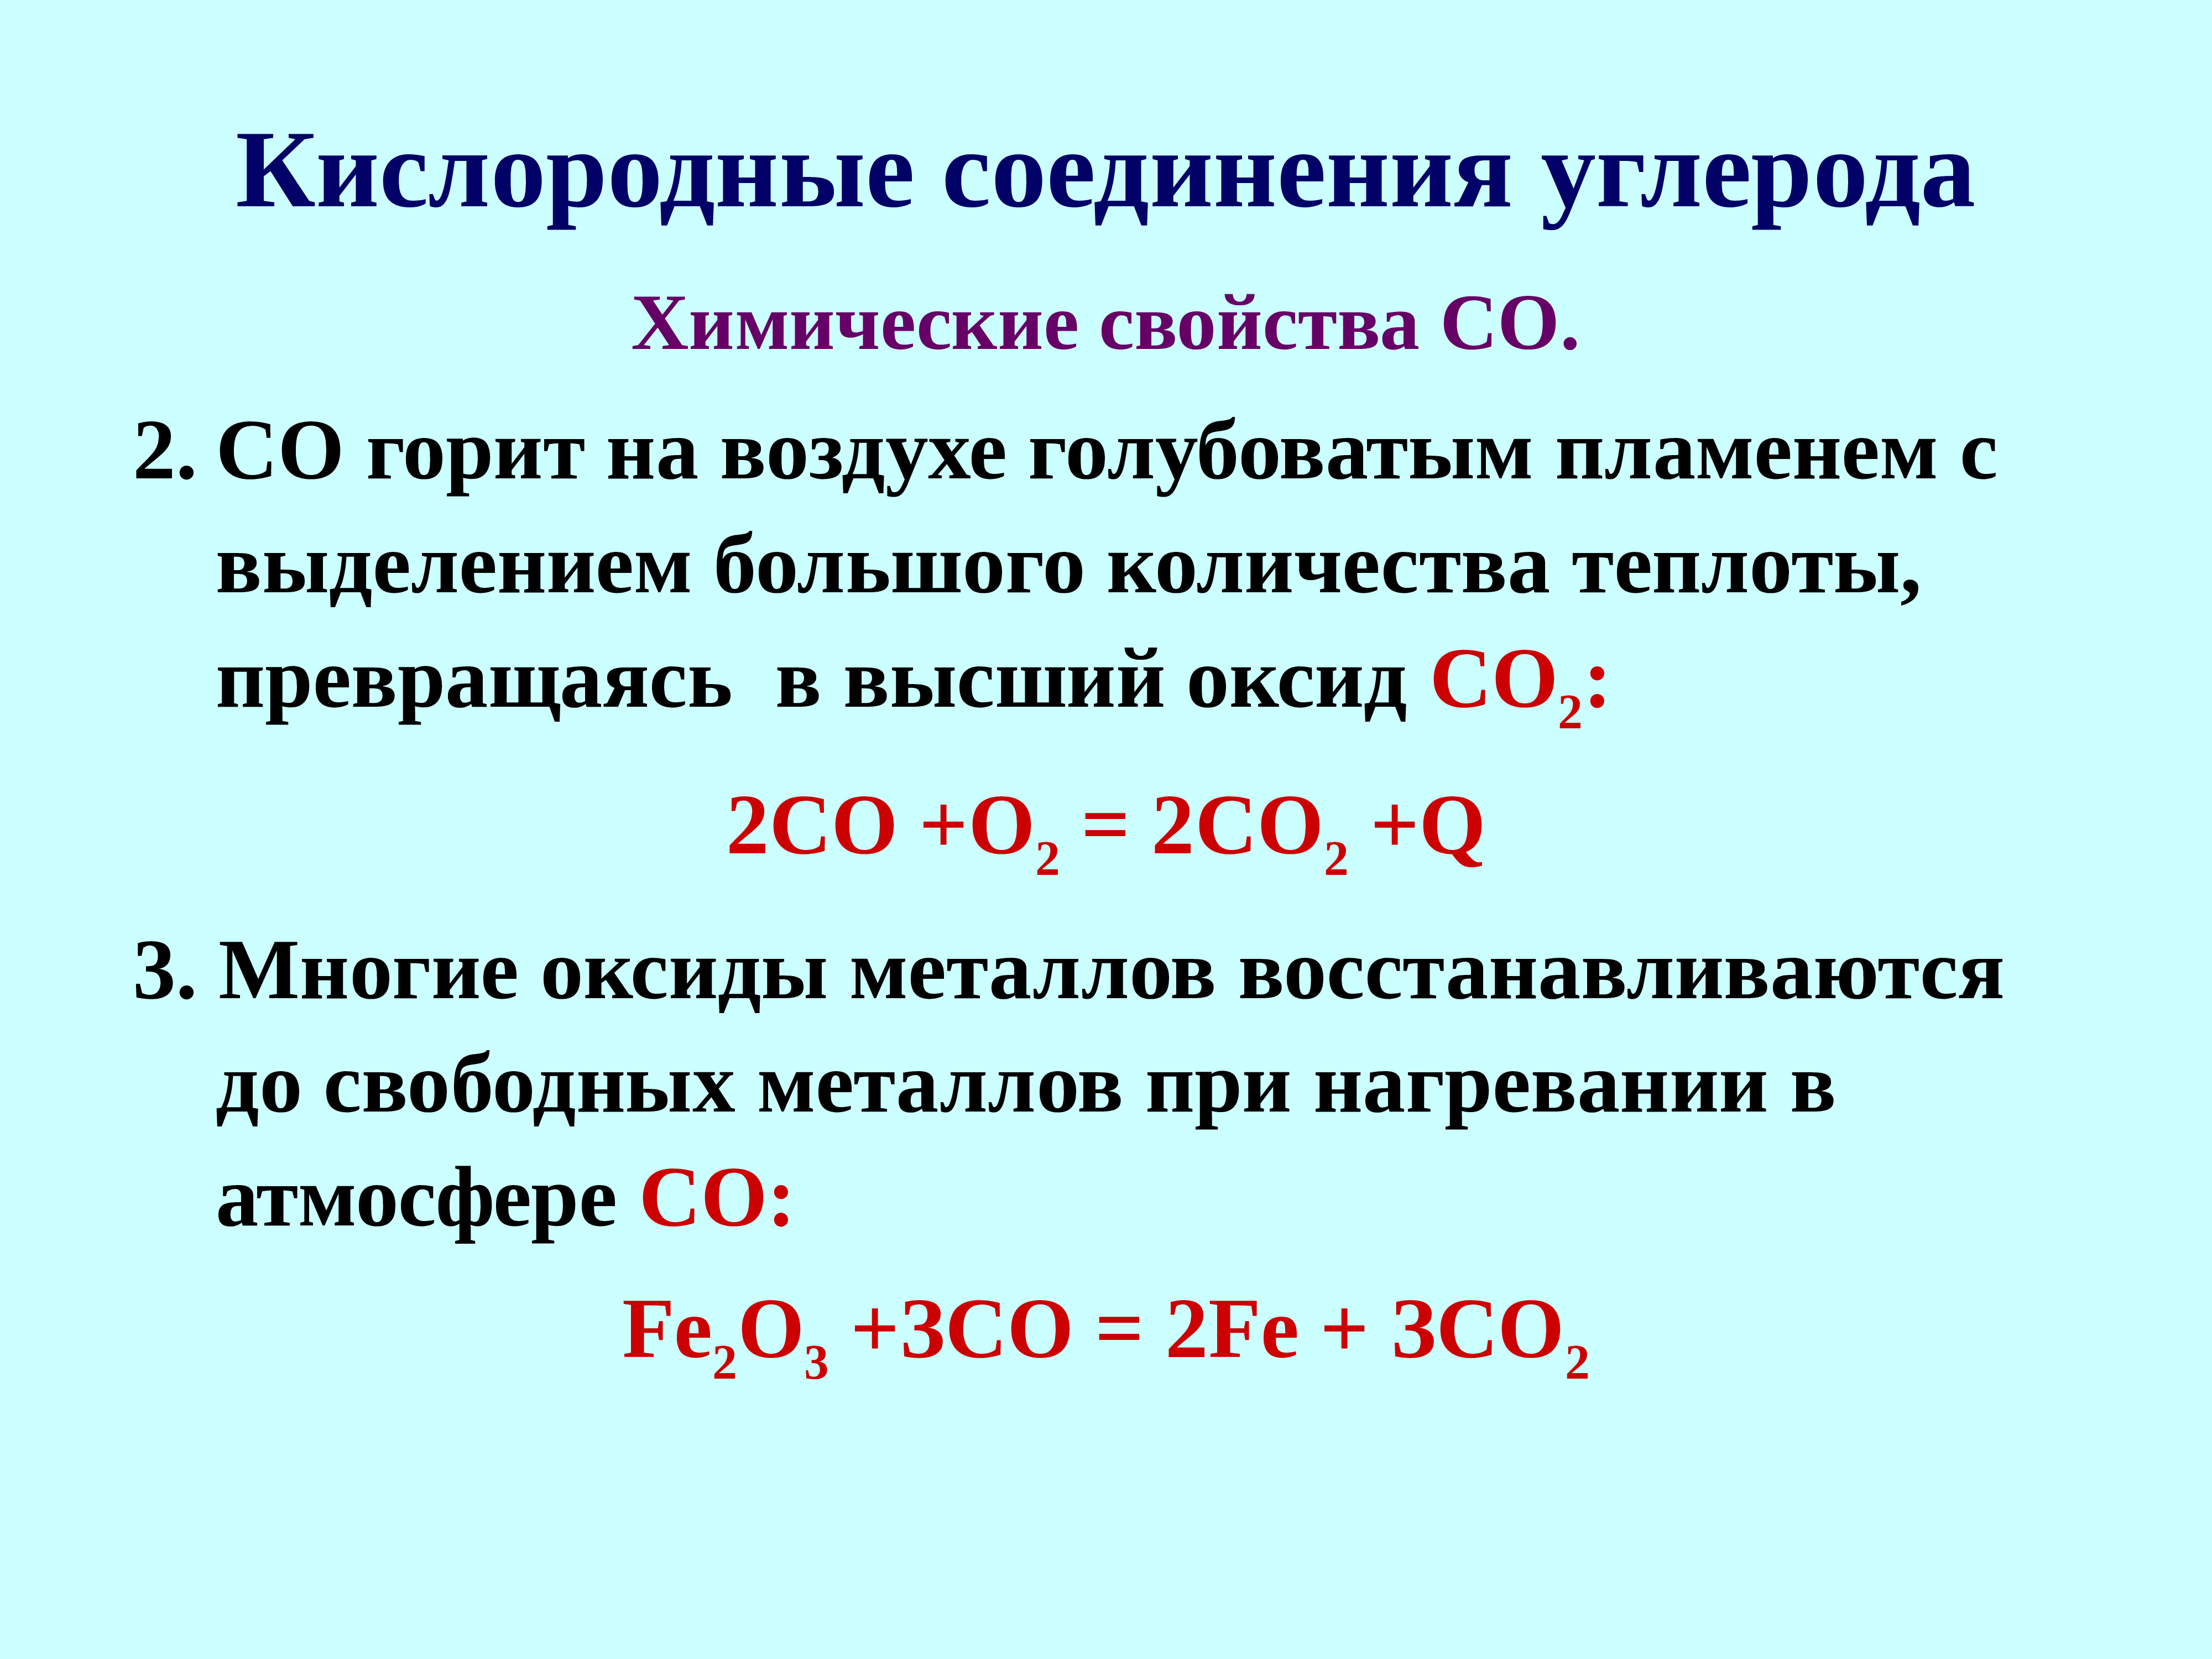 Значение соединений углерода. Кислородные соединения. Соединения углерода. Кислородные соединения углерода таблица. Кислородные соединения углерода конспект.